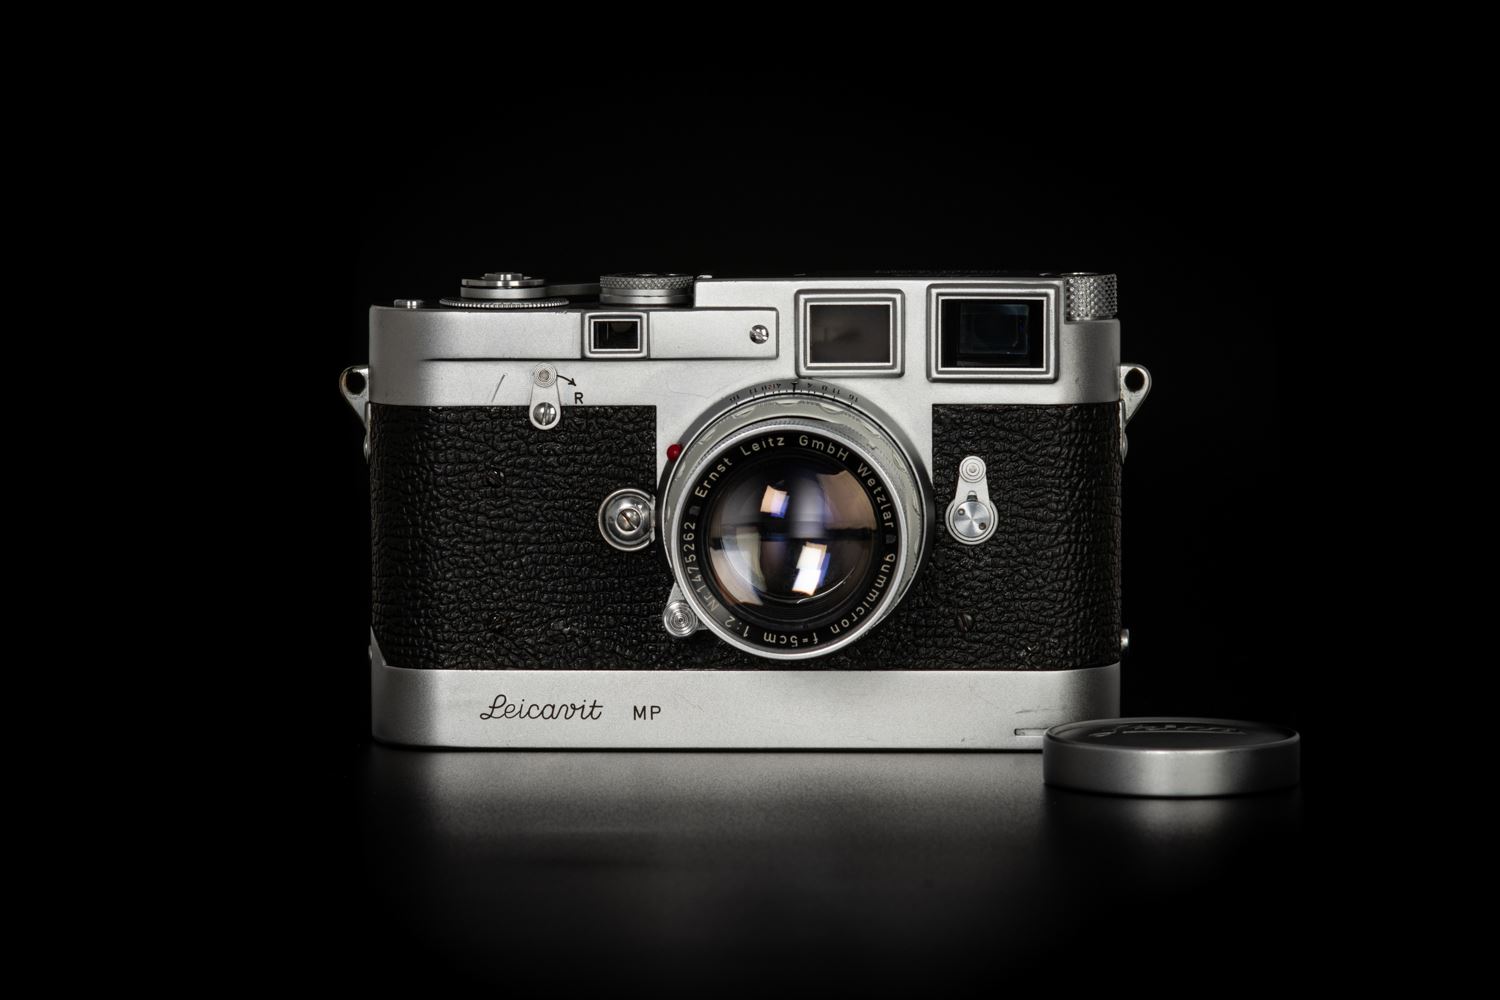 Picture of Leica Original MP-185 Silver